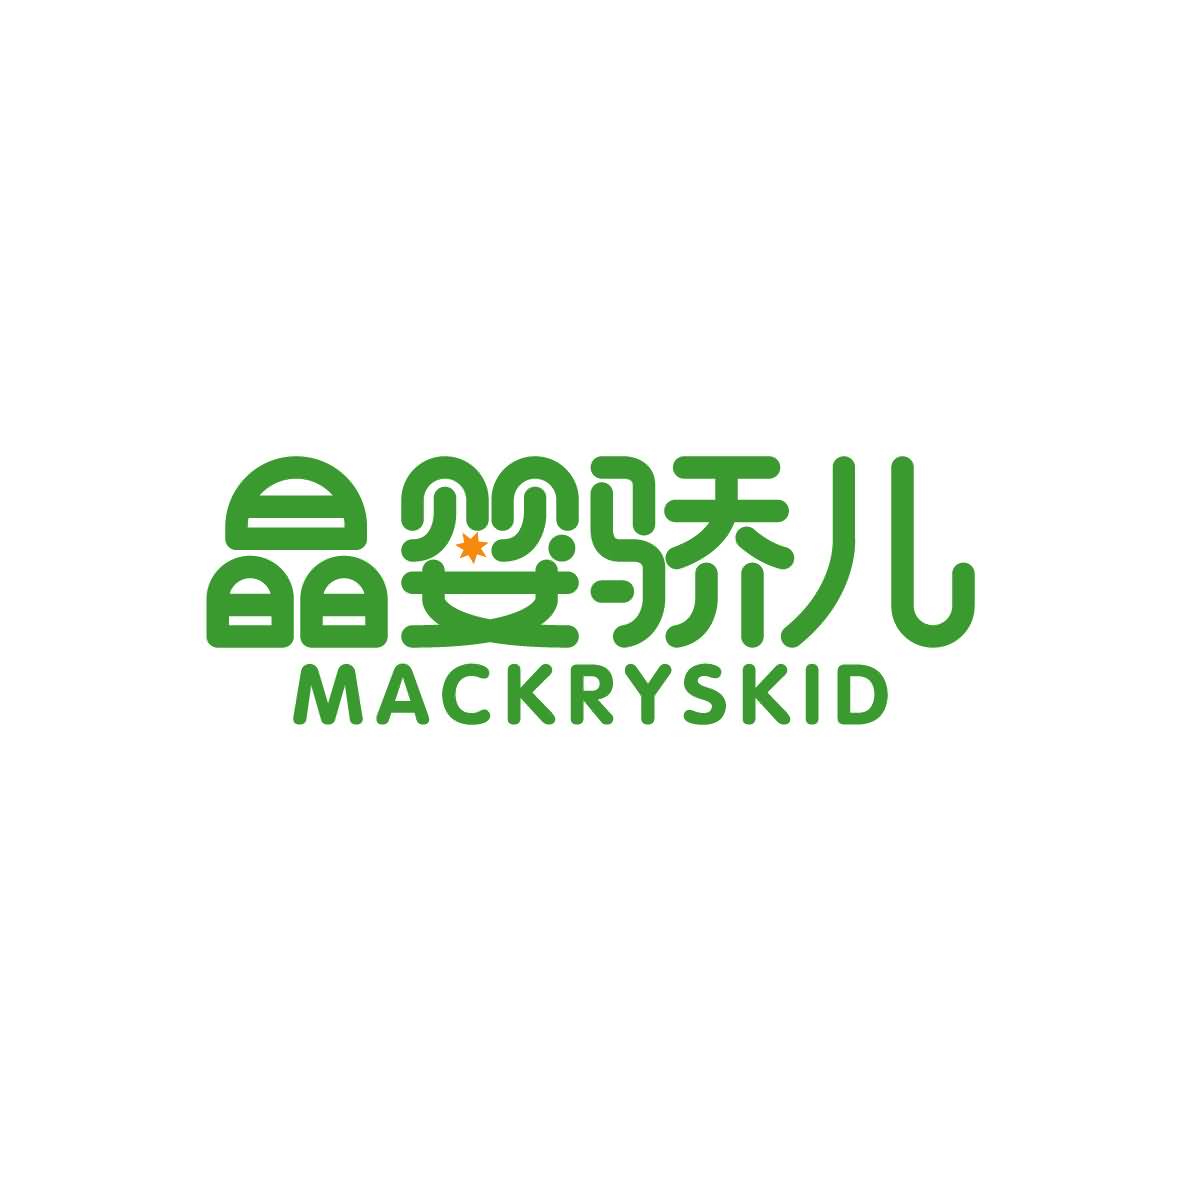 黎玲玲商标晶婴骄儿 MACKRYSKID（09类）商标转让流程及费用